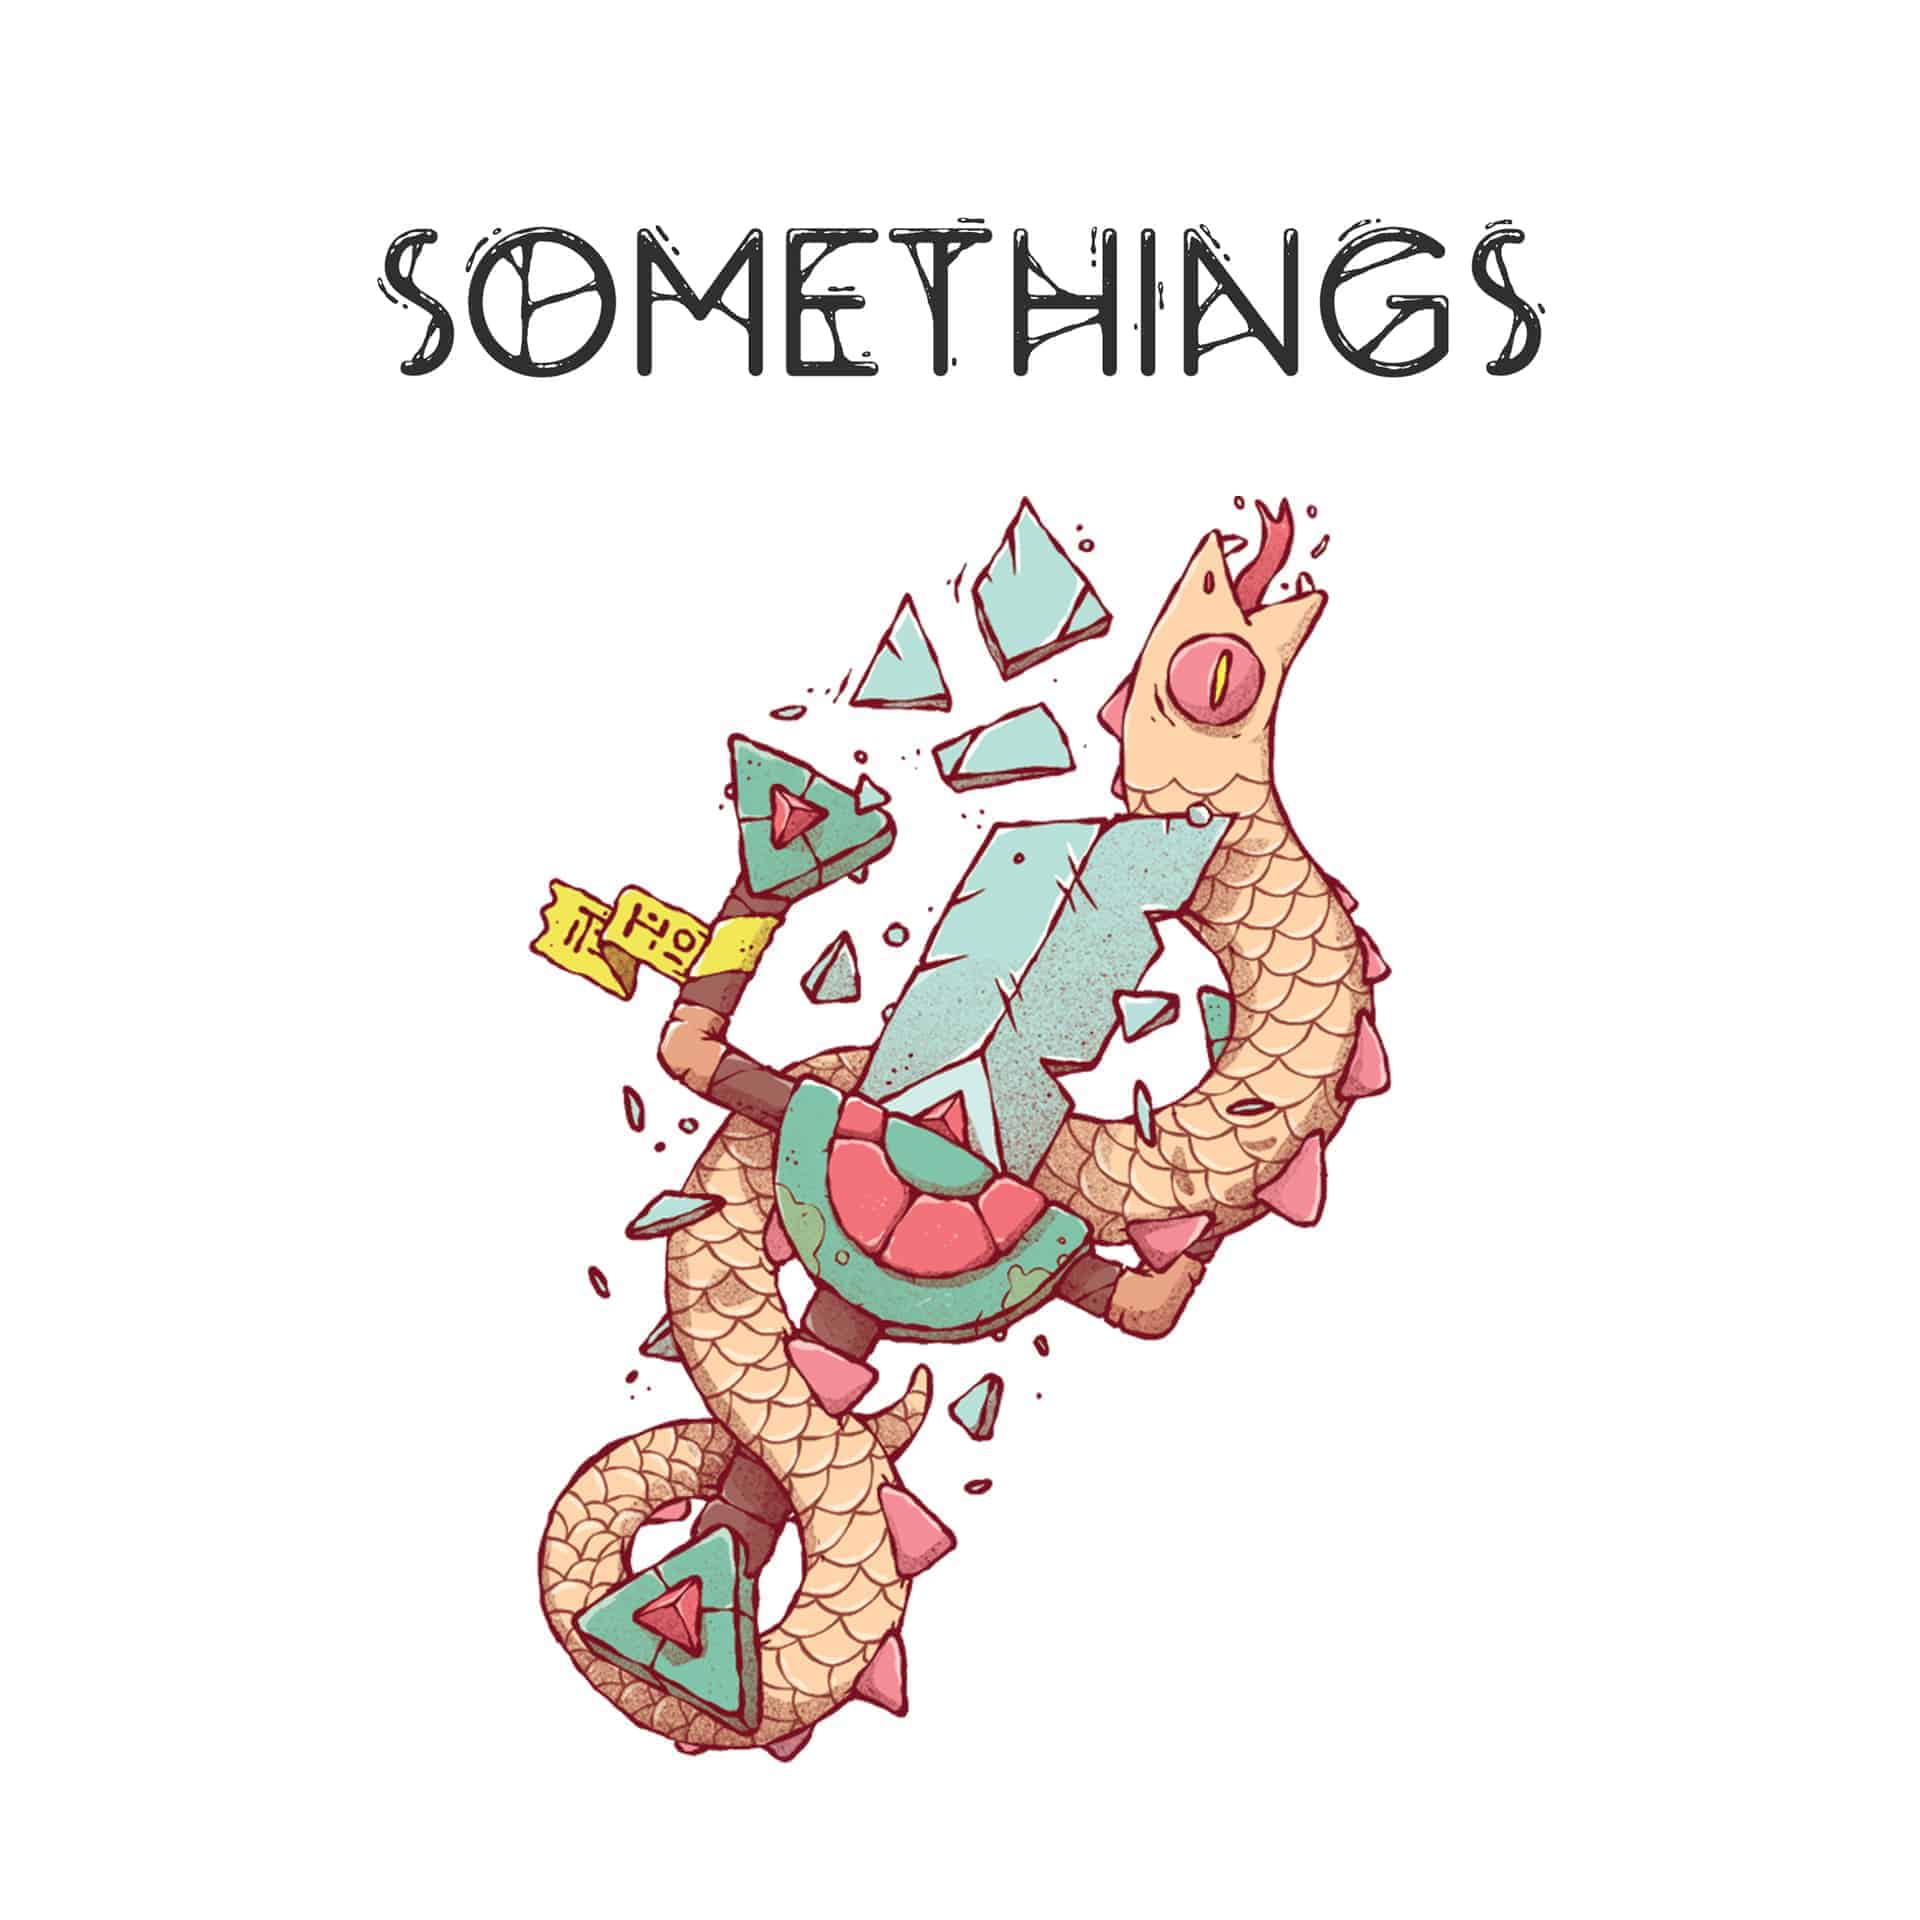 SOMETHINGS